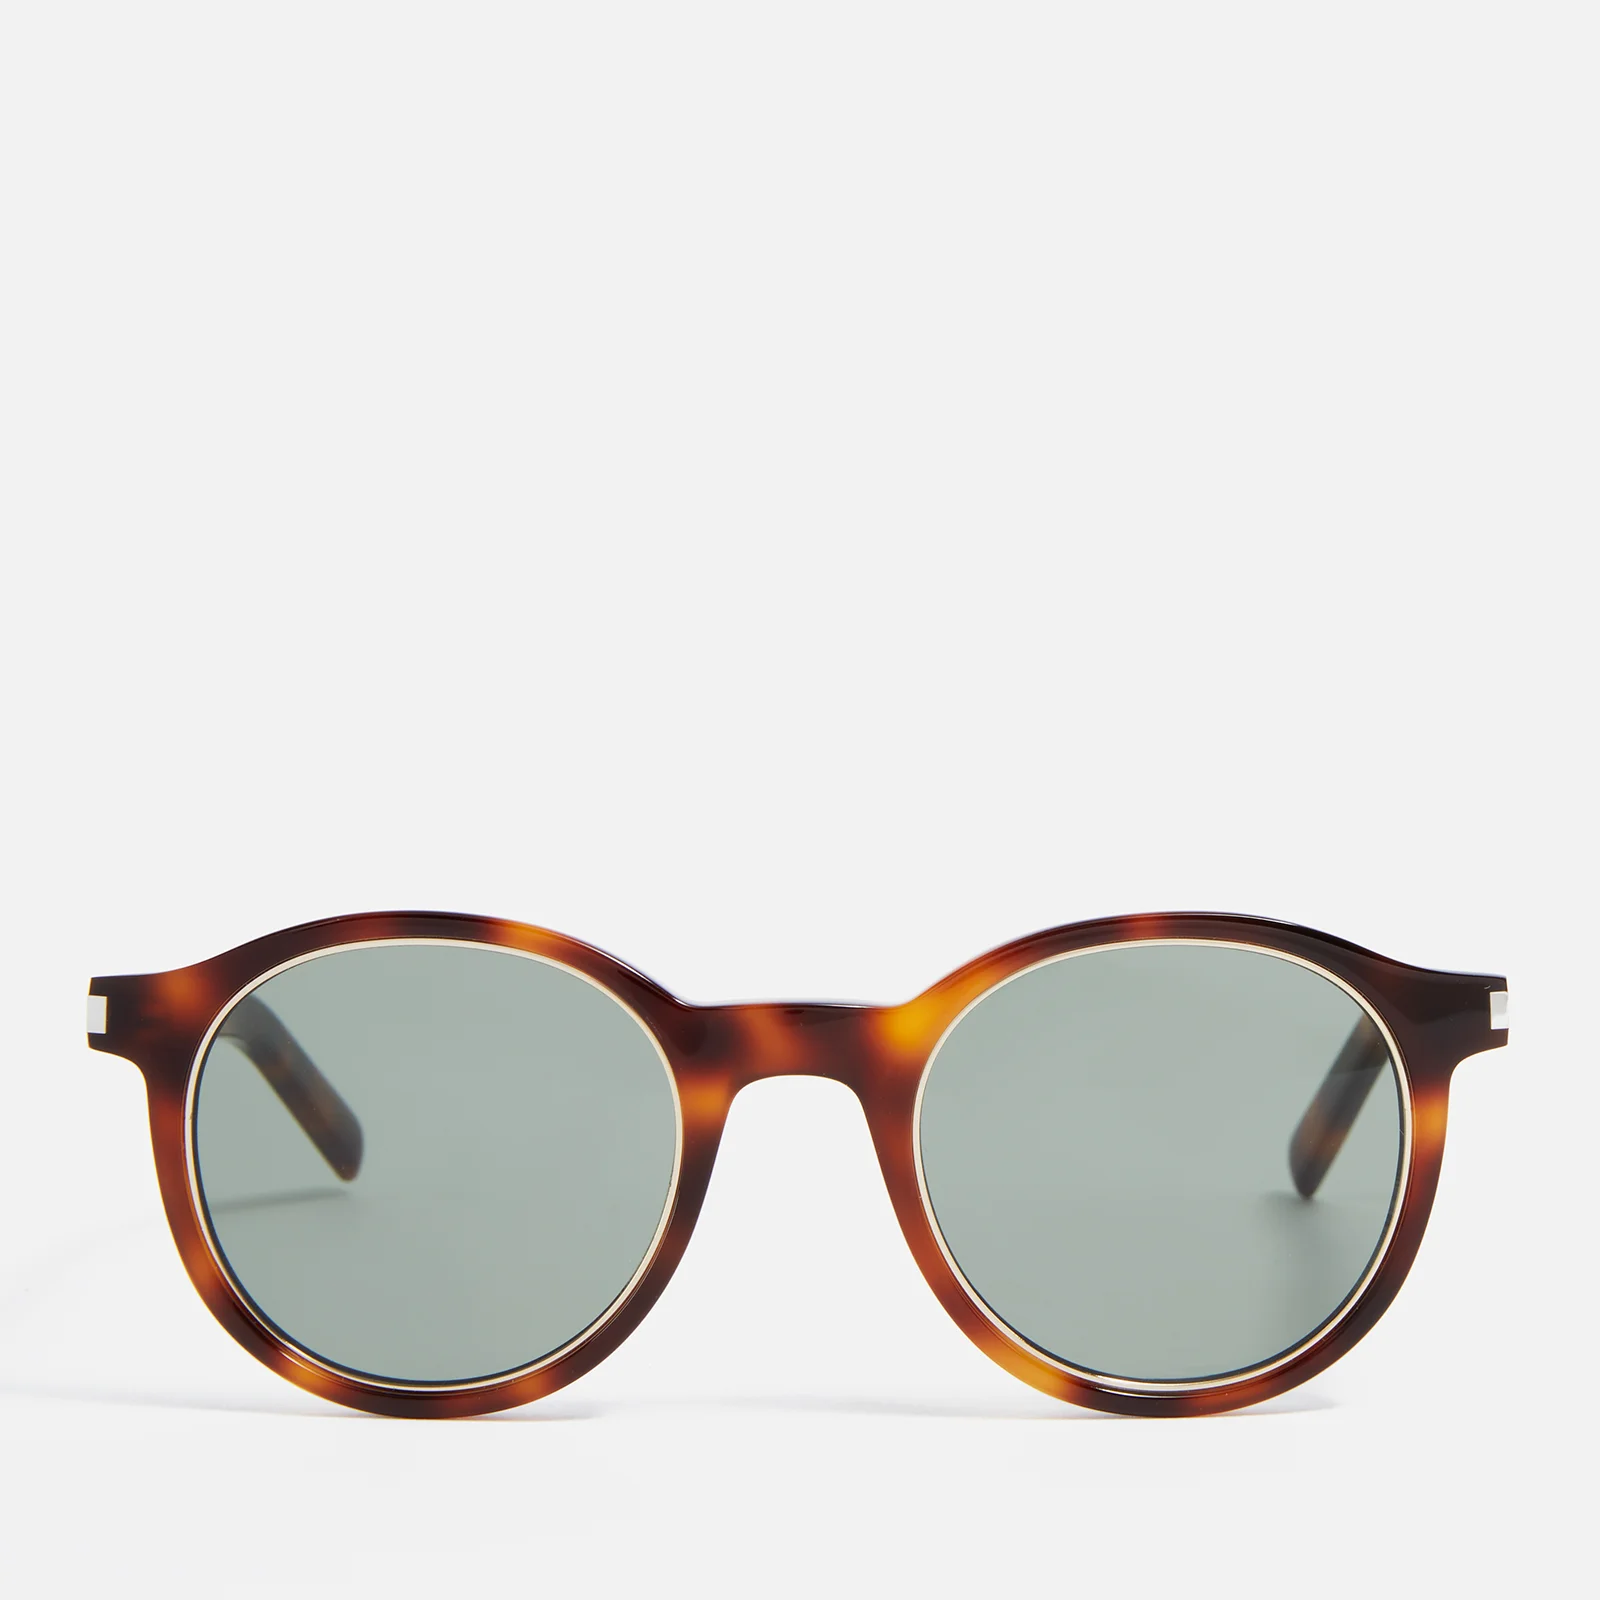 Saint Laurent Round-Frame Tortoiseshell Acetate Sunglasses Image 1